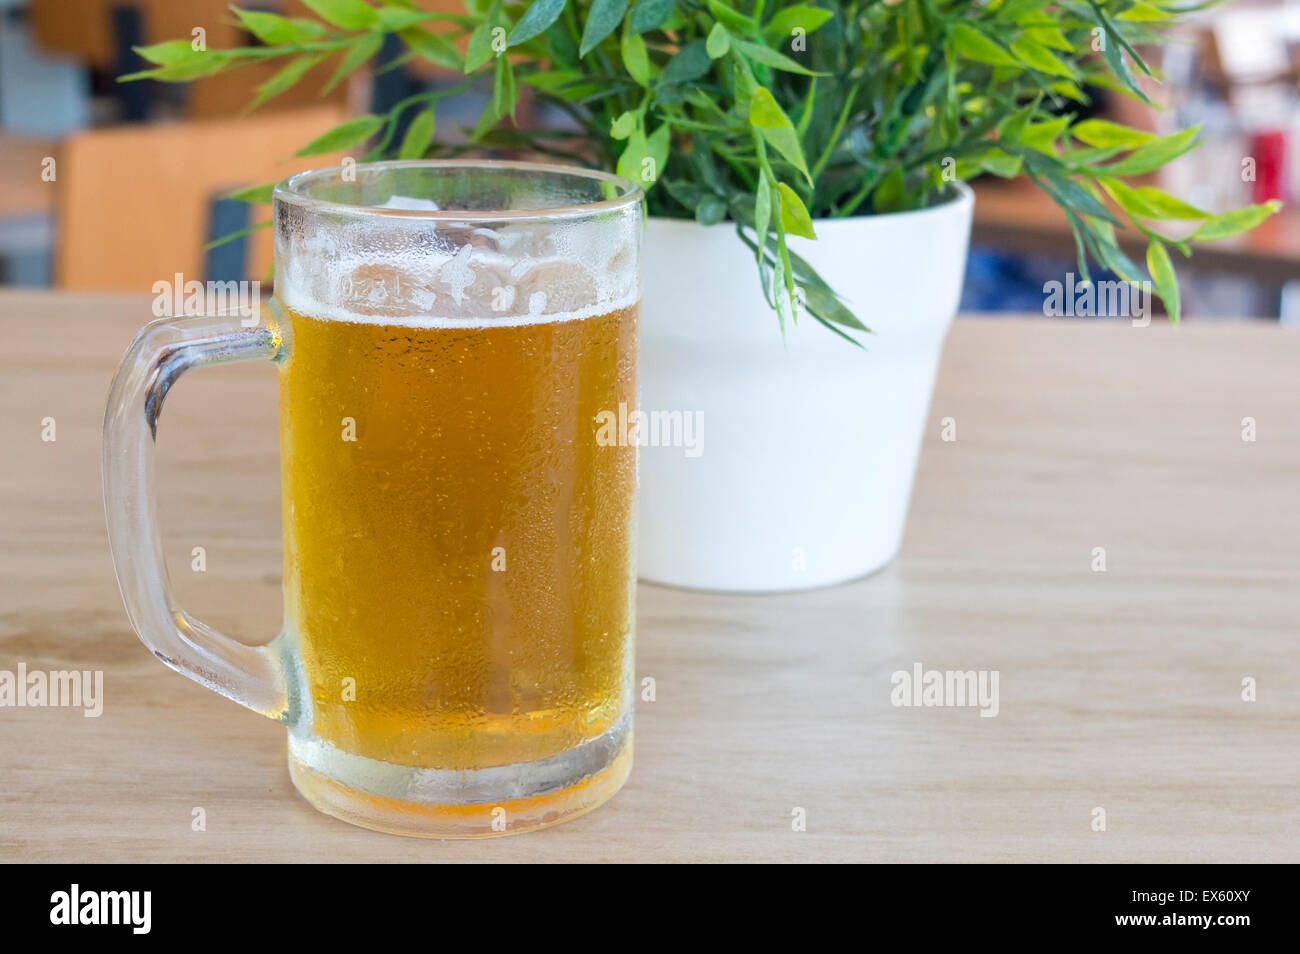 Bierkrug gefüllt mit frischem Bier vom Fass auf einem Tisch neben einer Pflanze Stockfoto